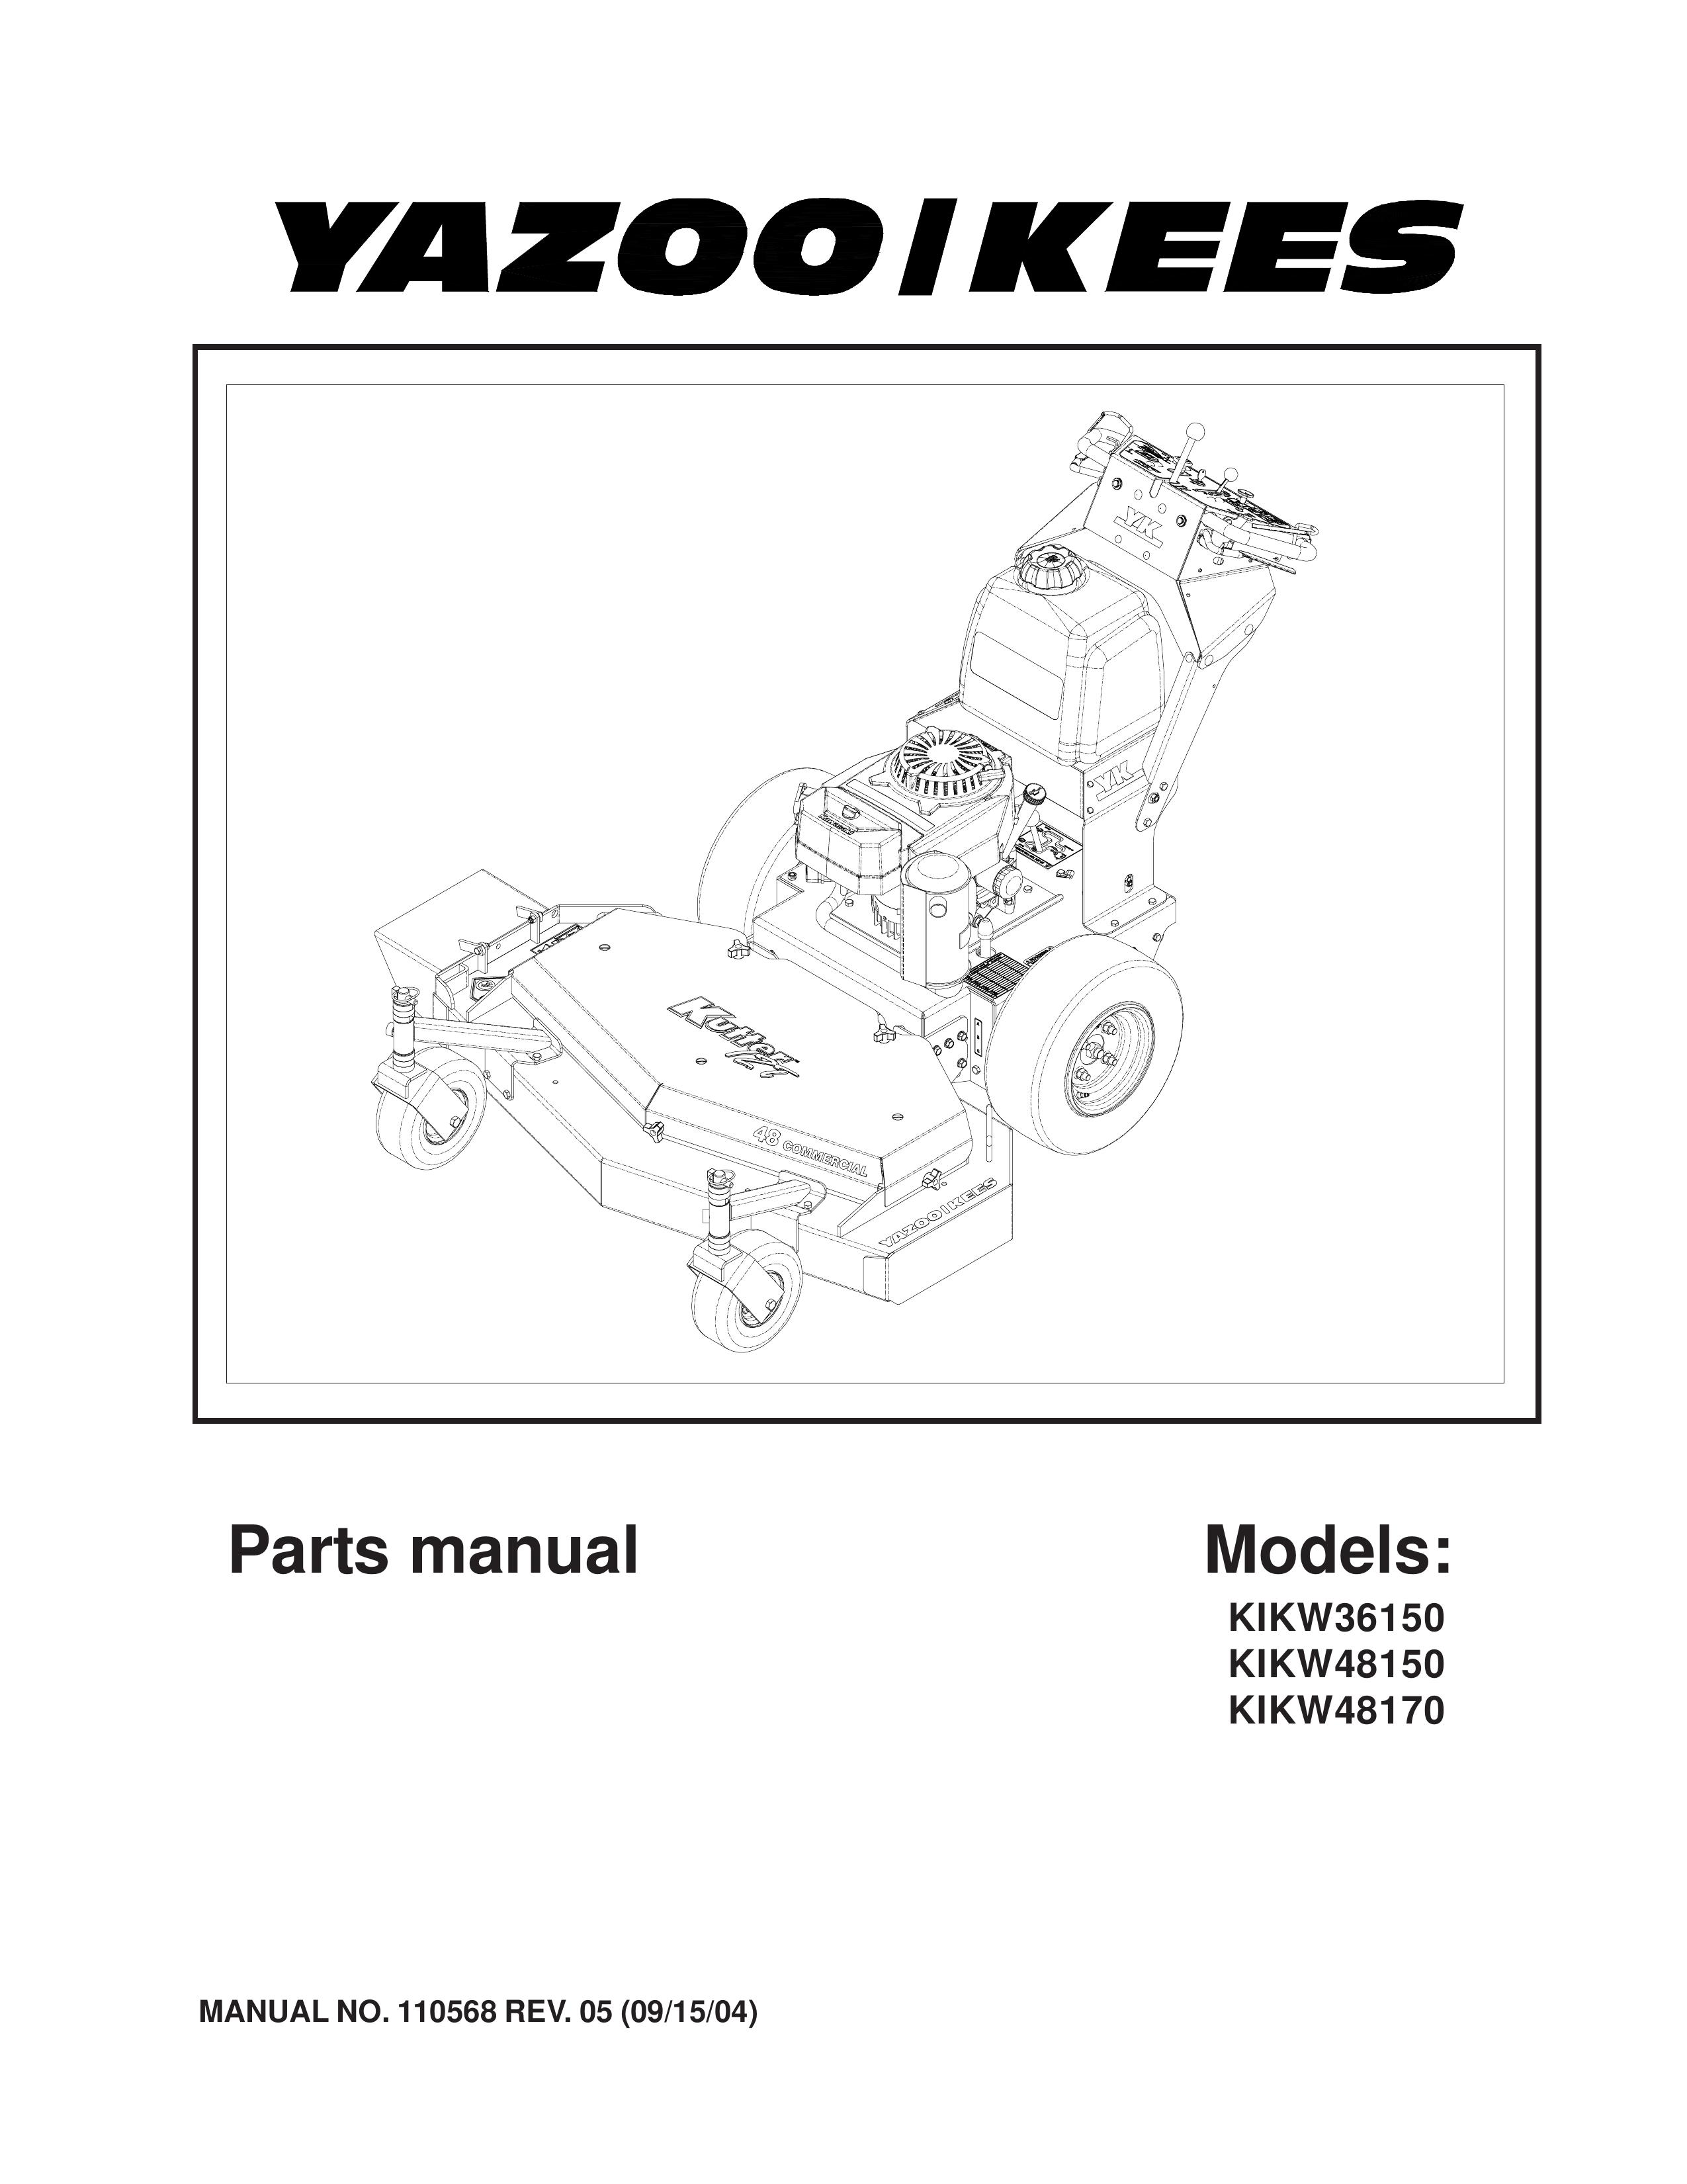 Yazoo/Kees KIKW48150 Lawn Mower User Manual